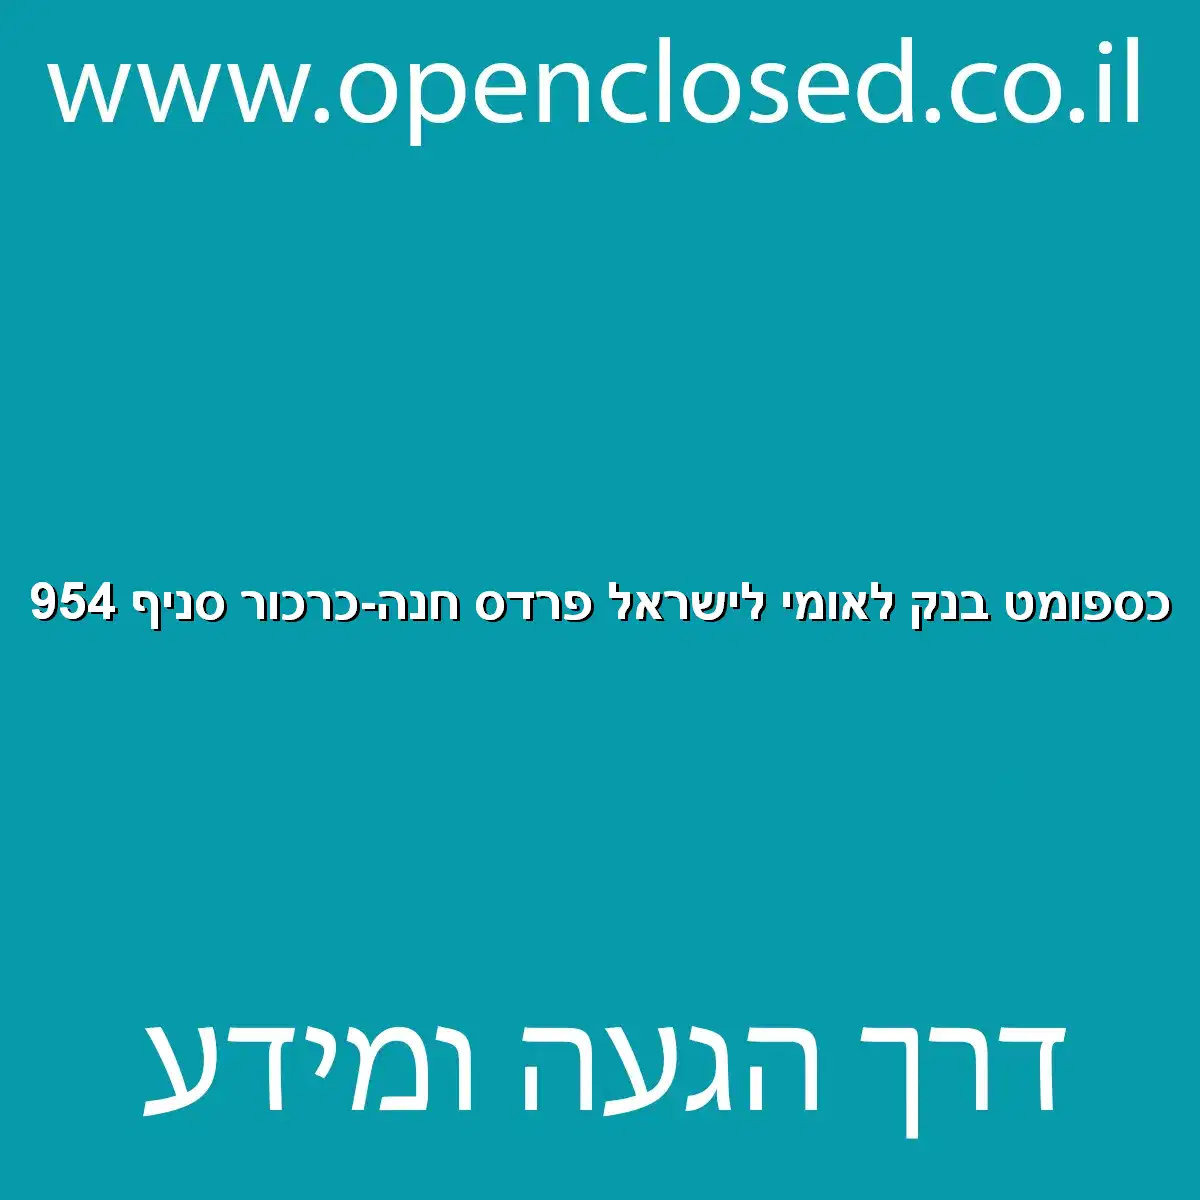 כספומט בנק לאומי לישראל פרדס חנה-כרכור סניף 954